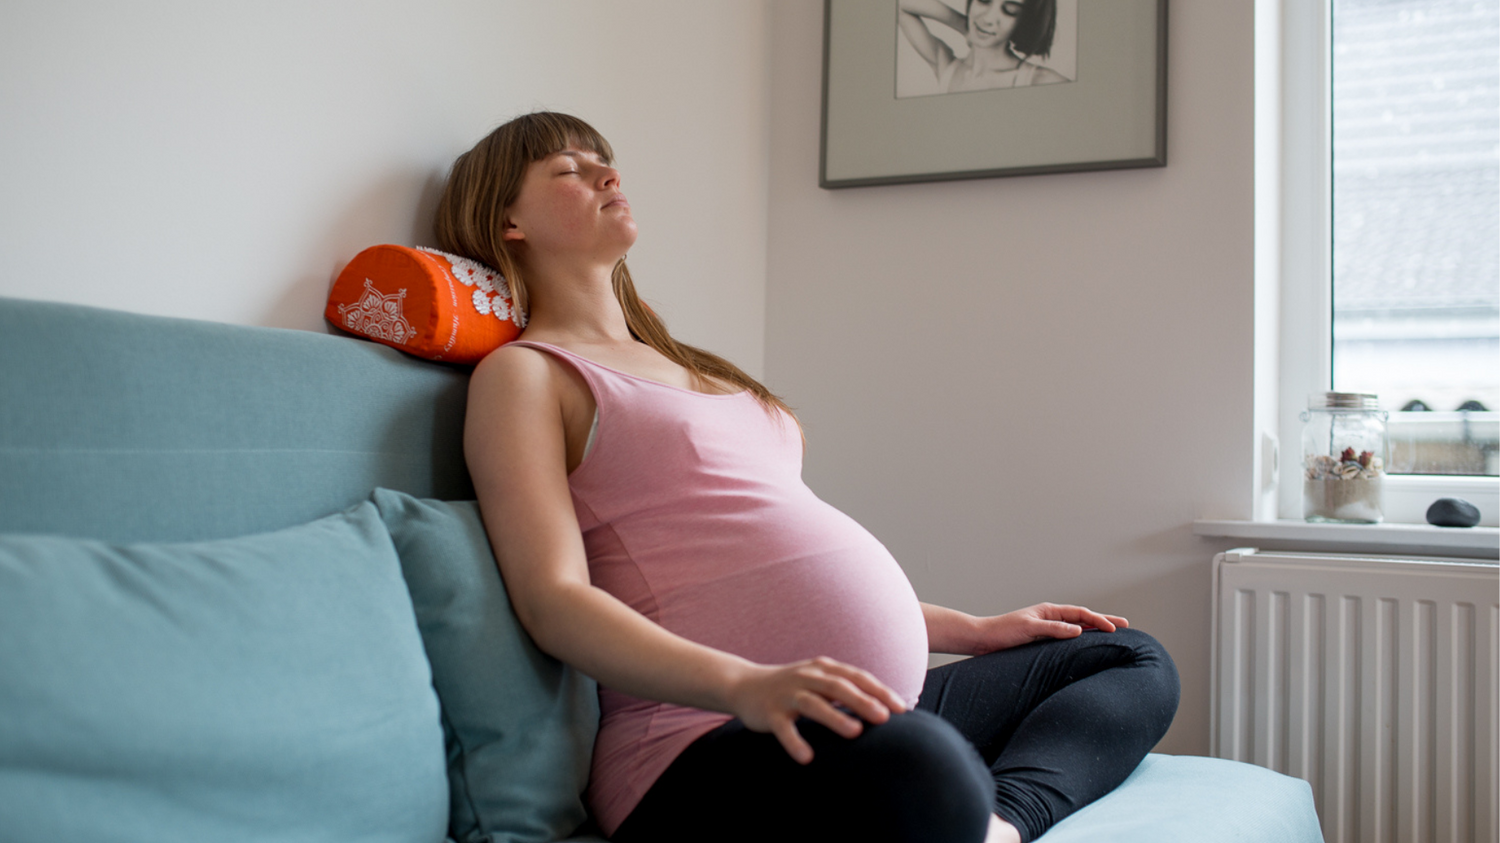 Geburtsvorbereitung mit Akupressur - ein persönlicher Erfahrungsbericht